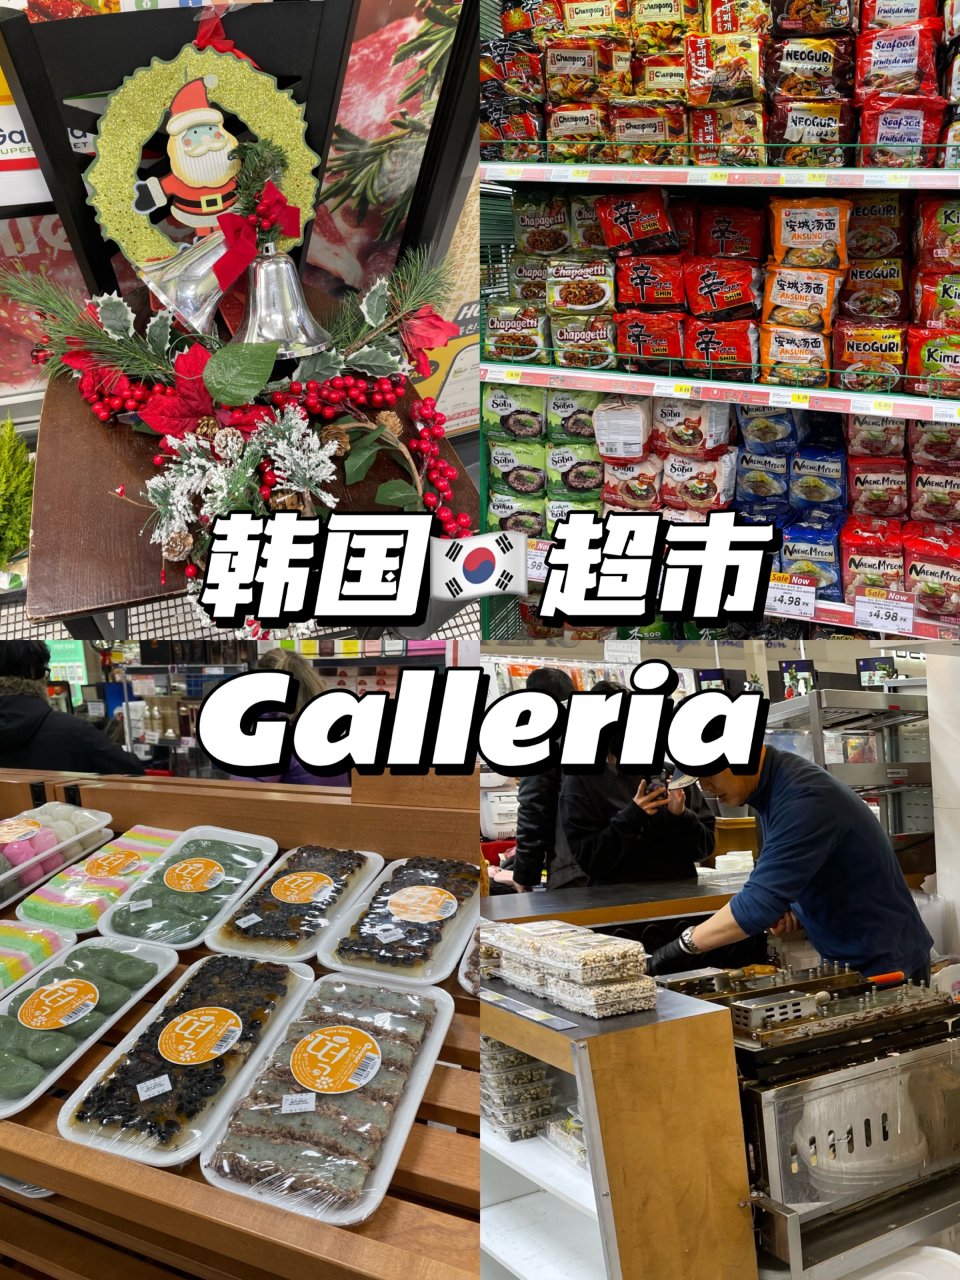 多伦多｜韩国超市Galleria...